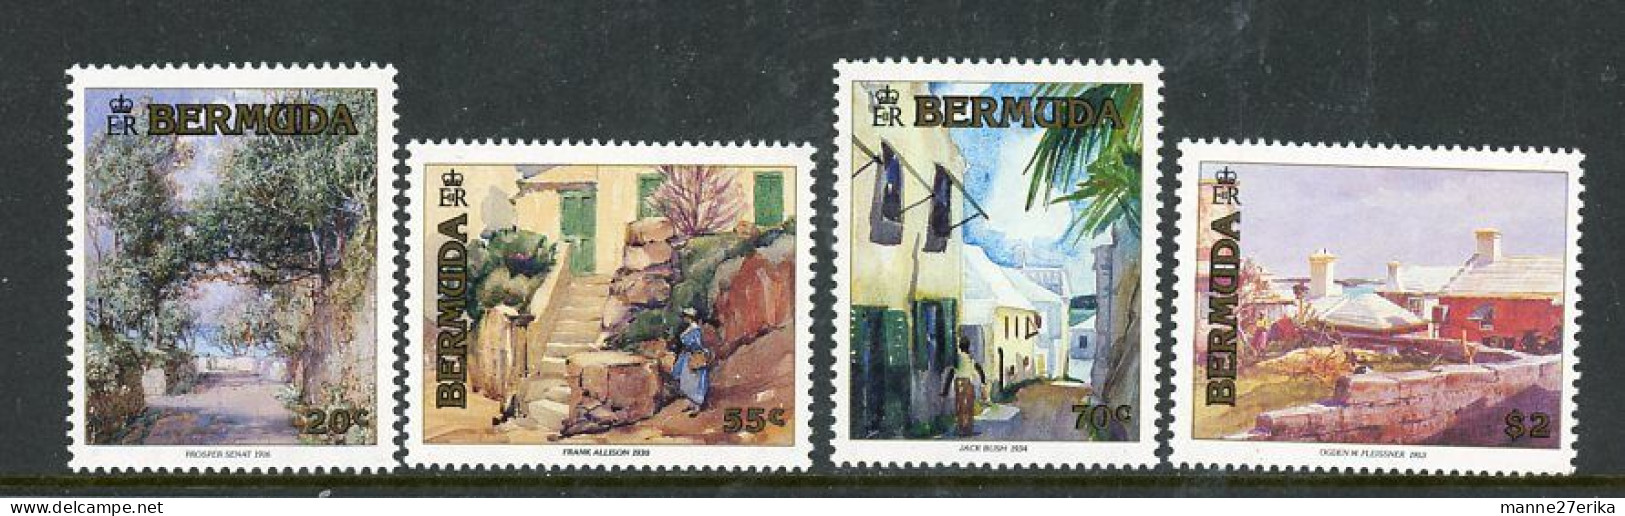 Bermuda MNH 1991 - Bermudas